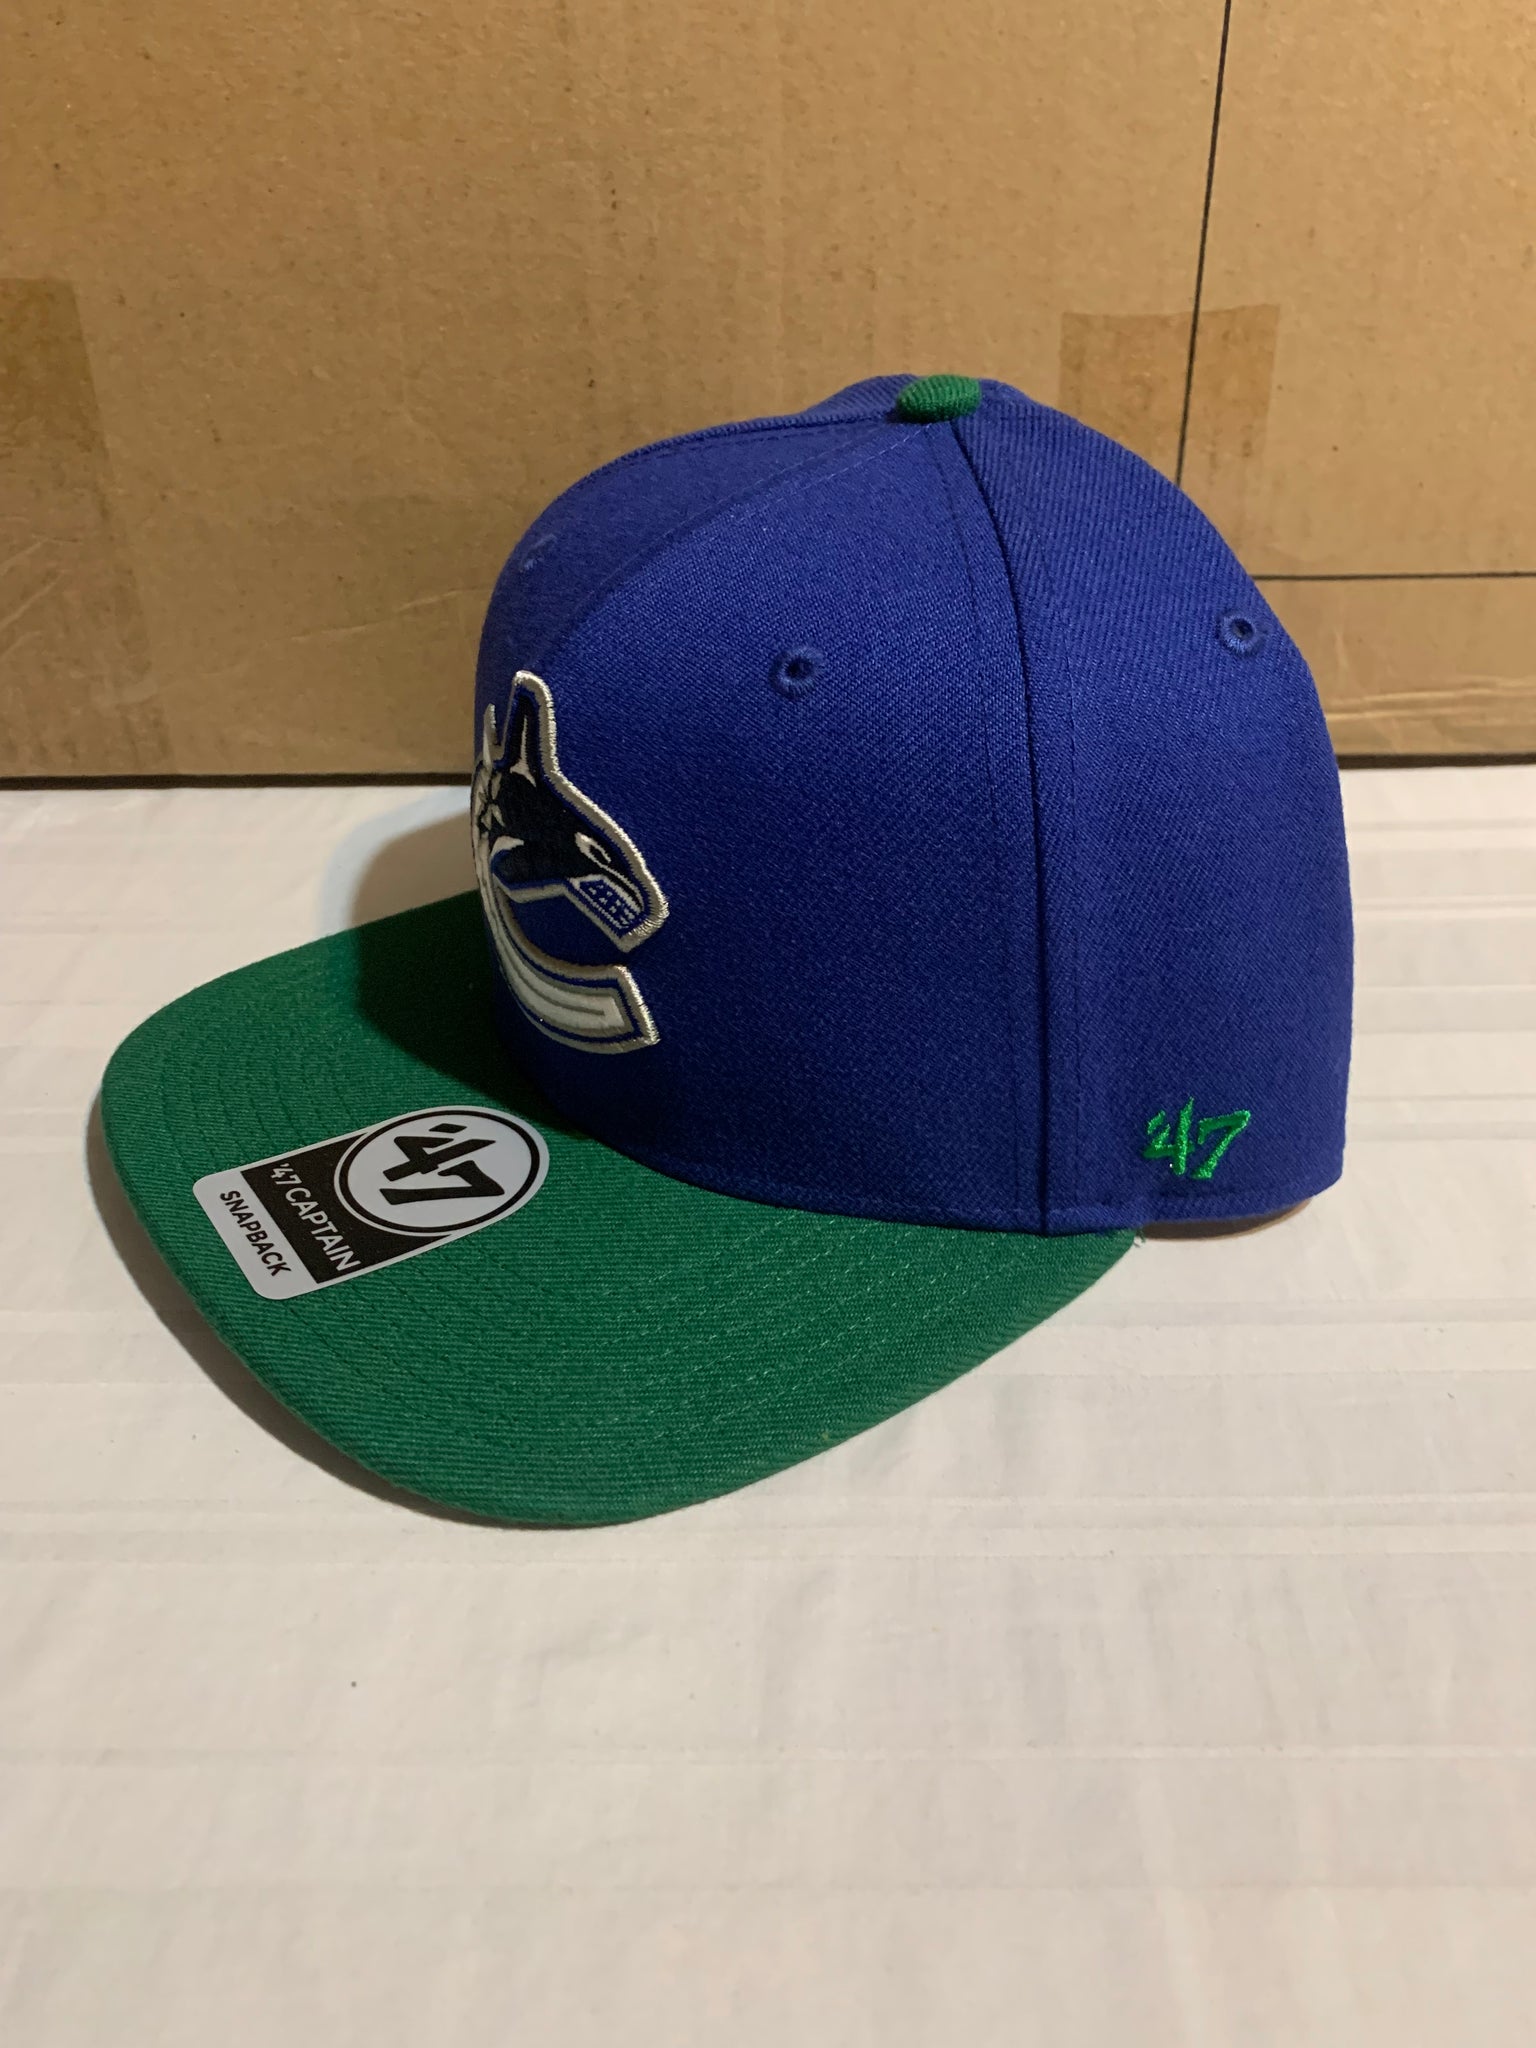 Vancouver Canucks NHL '47 Brand Blue Sure Shot Adjustable Snapback Hat  YOUTH